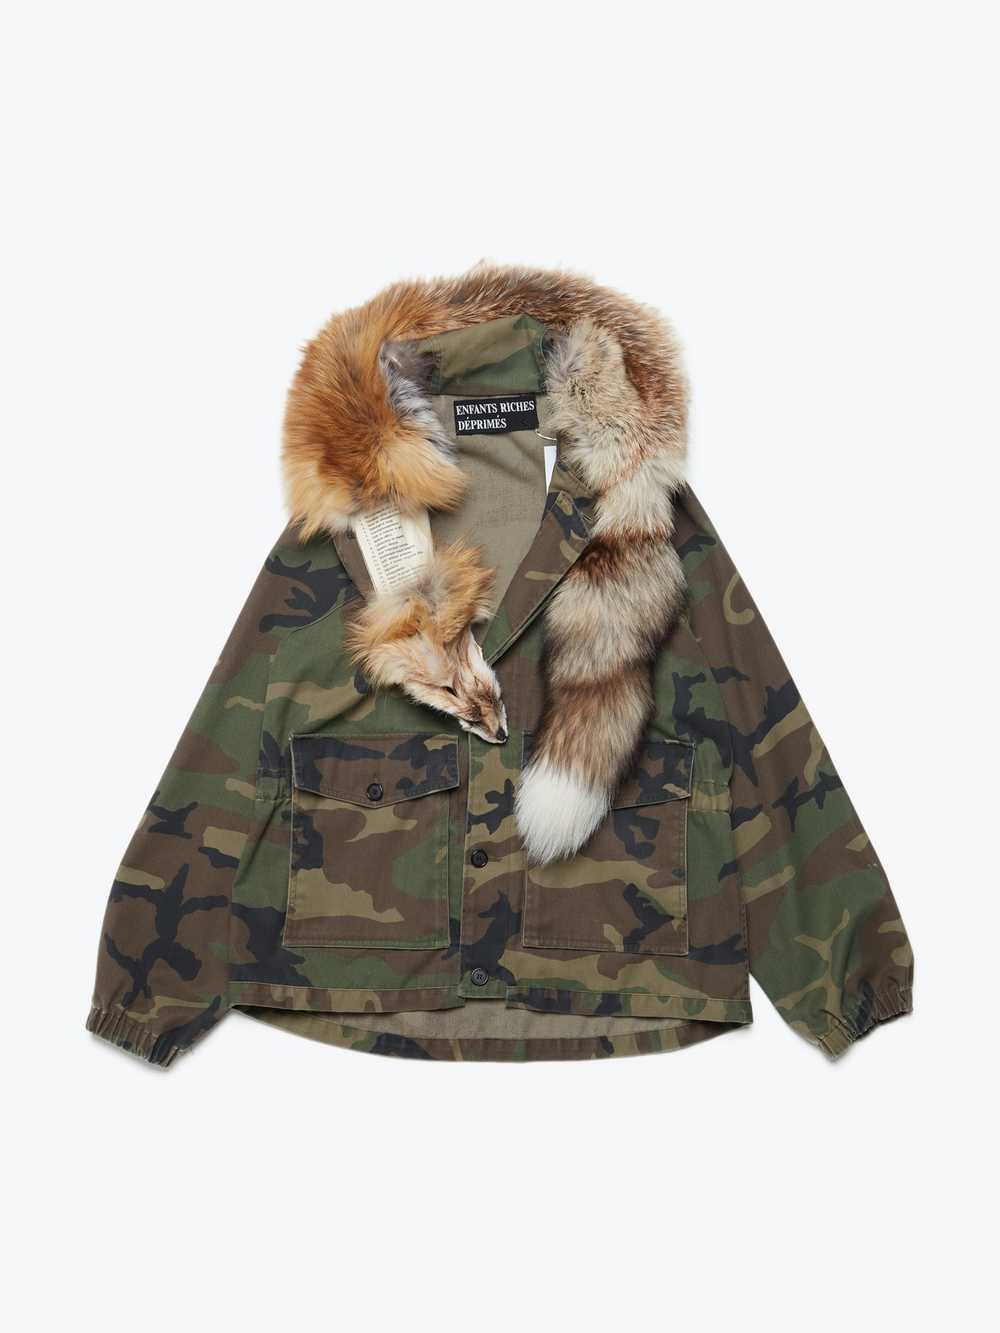 Enfants Riches Deprimes Camo Fox Fur Collared Par… - image 1